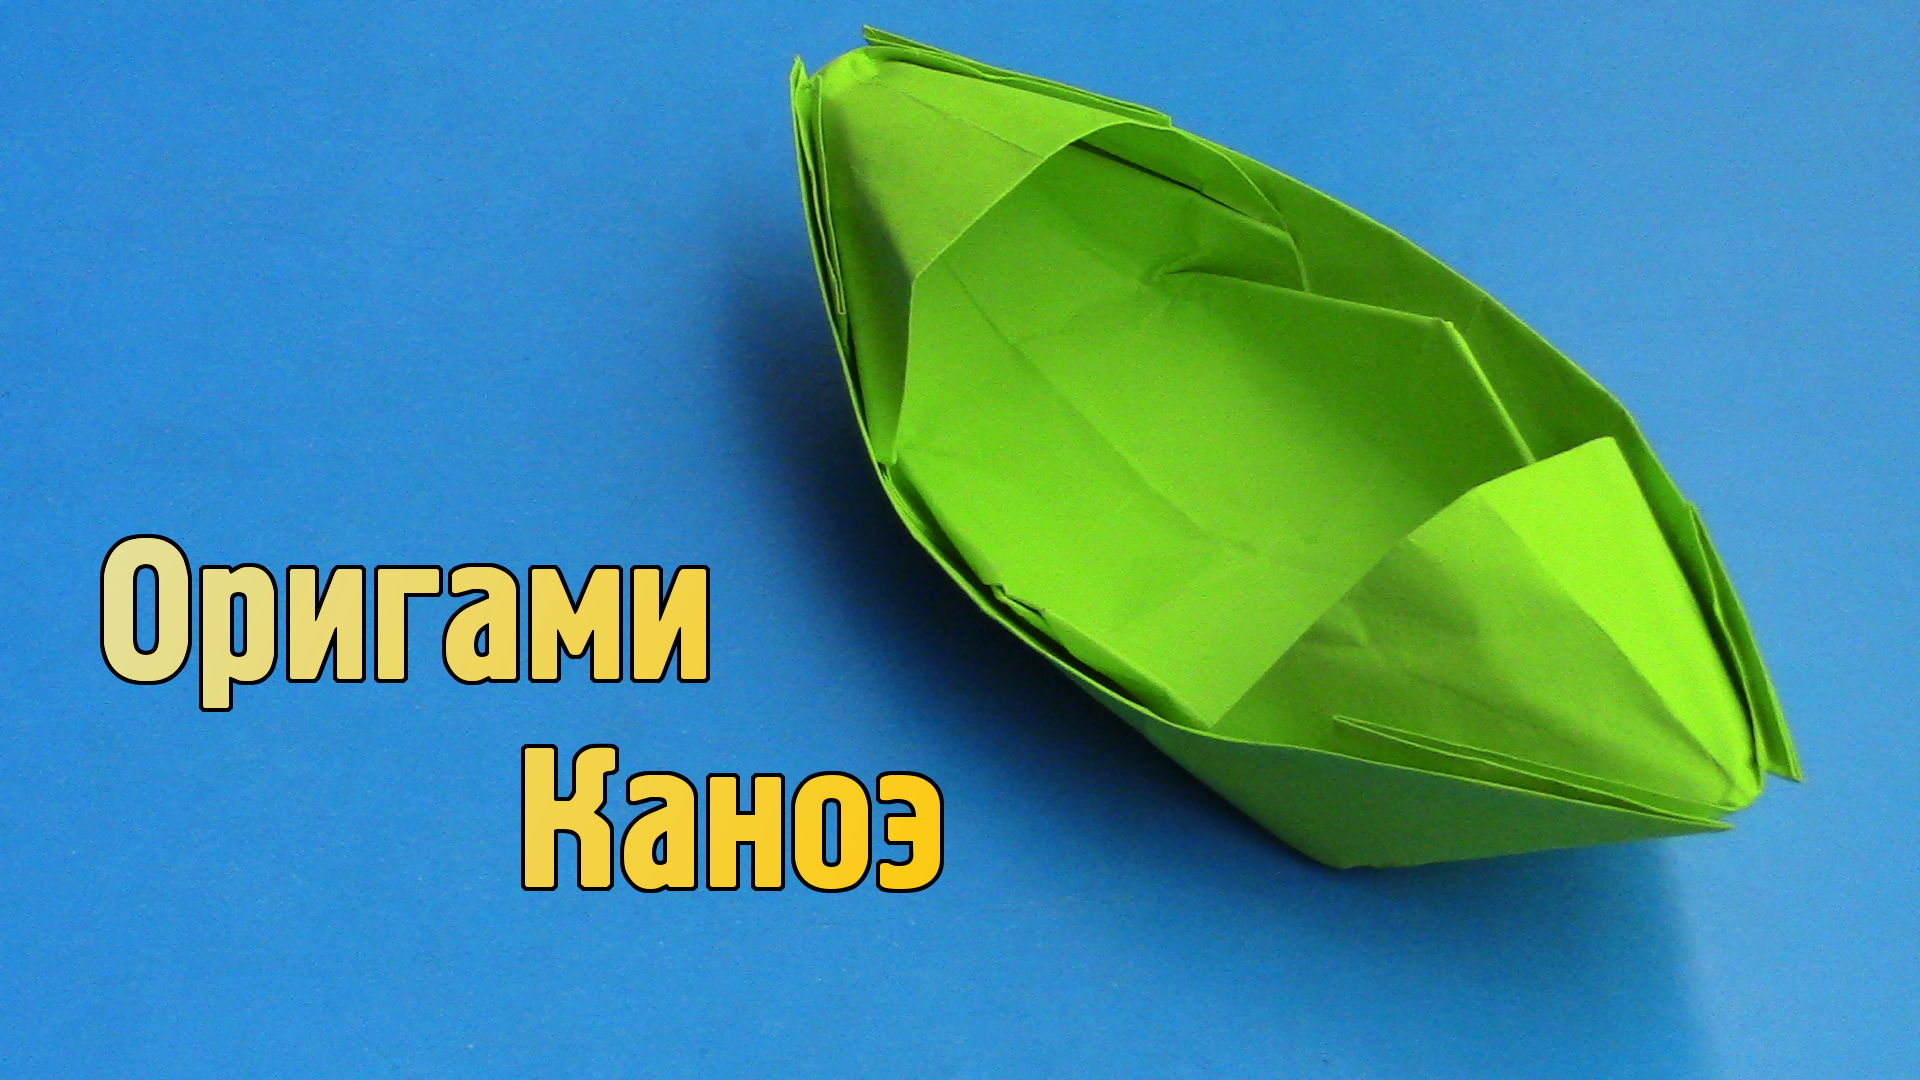 Как сделать Лодку из бумаги своими руками без клея | Оригами Лодка Каноэ для детей из одного листа